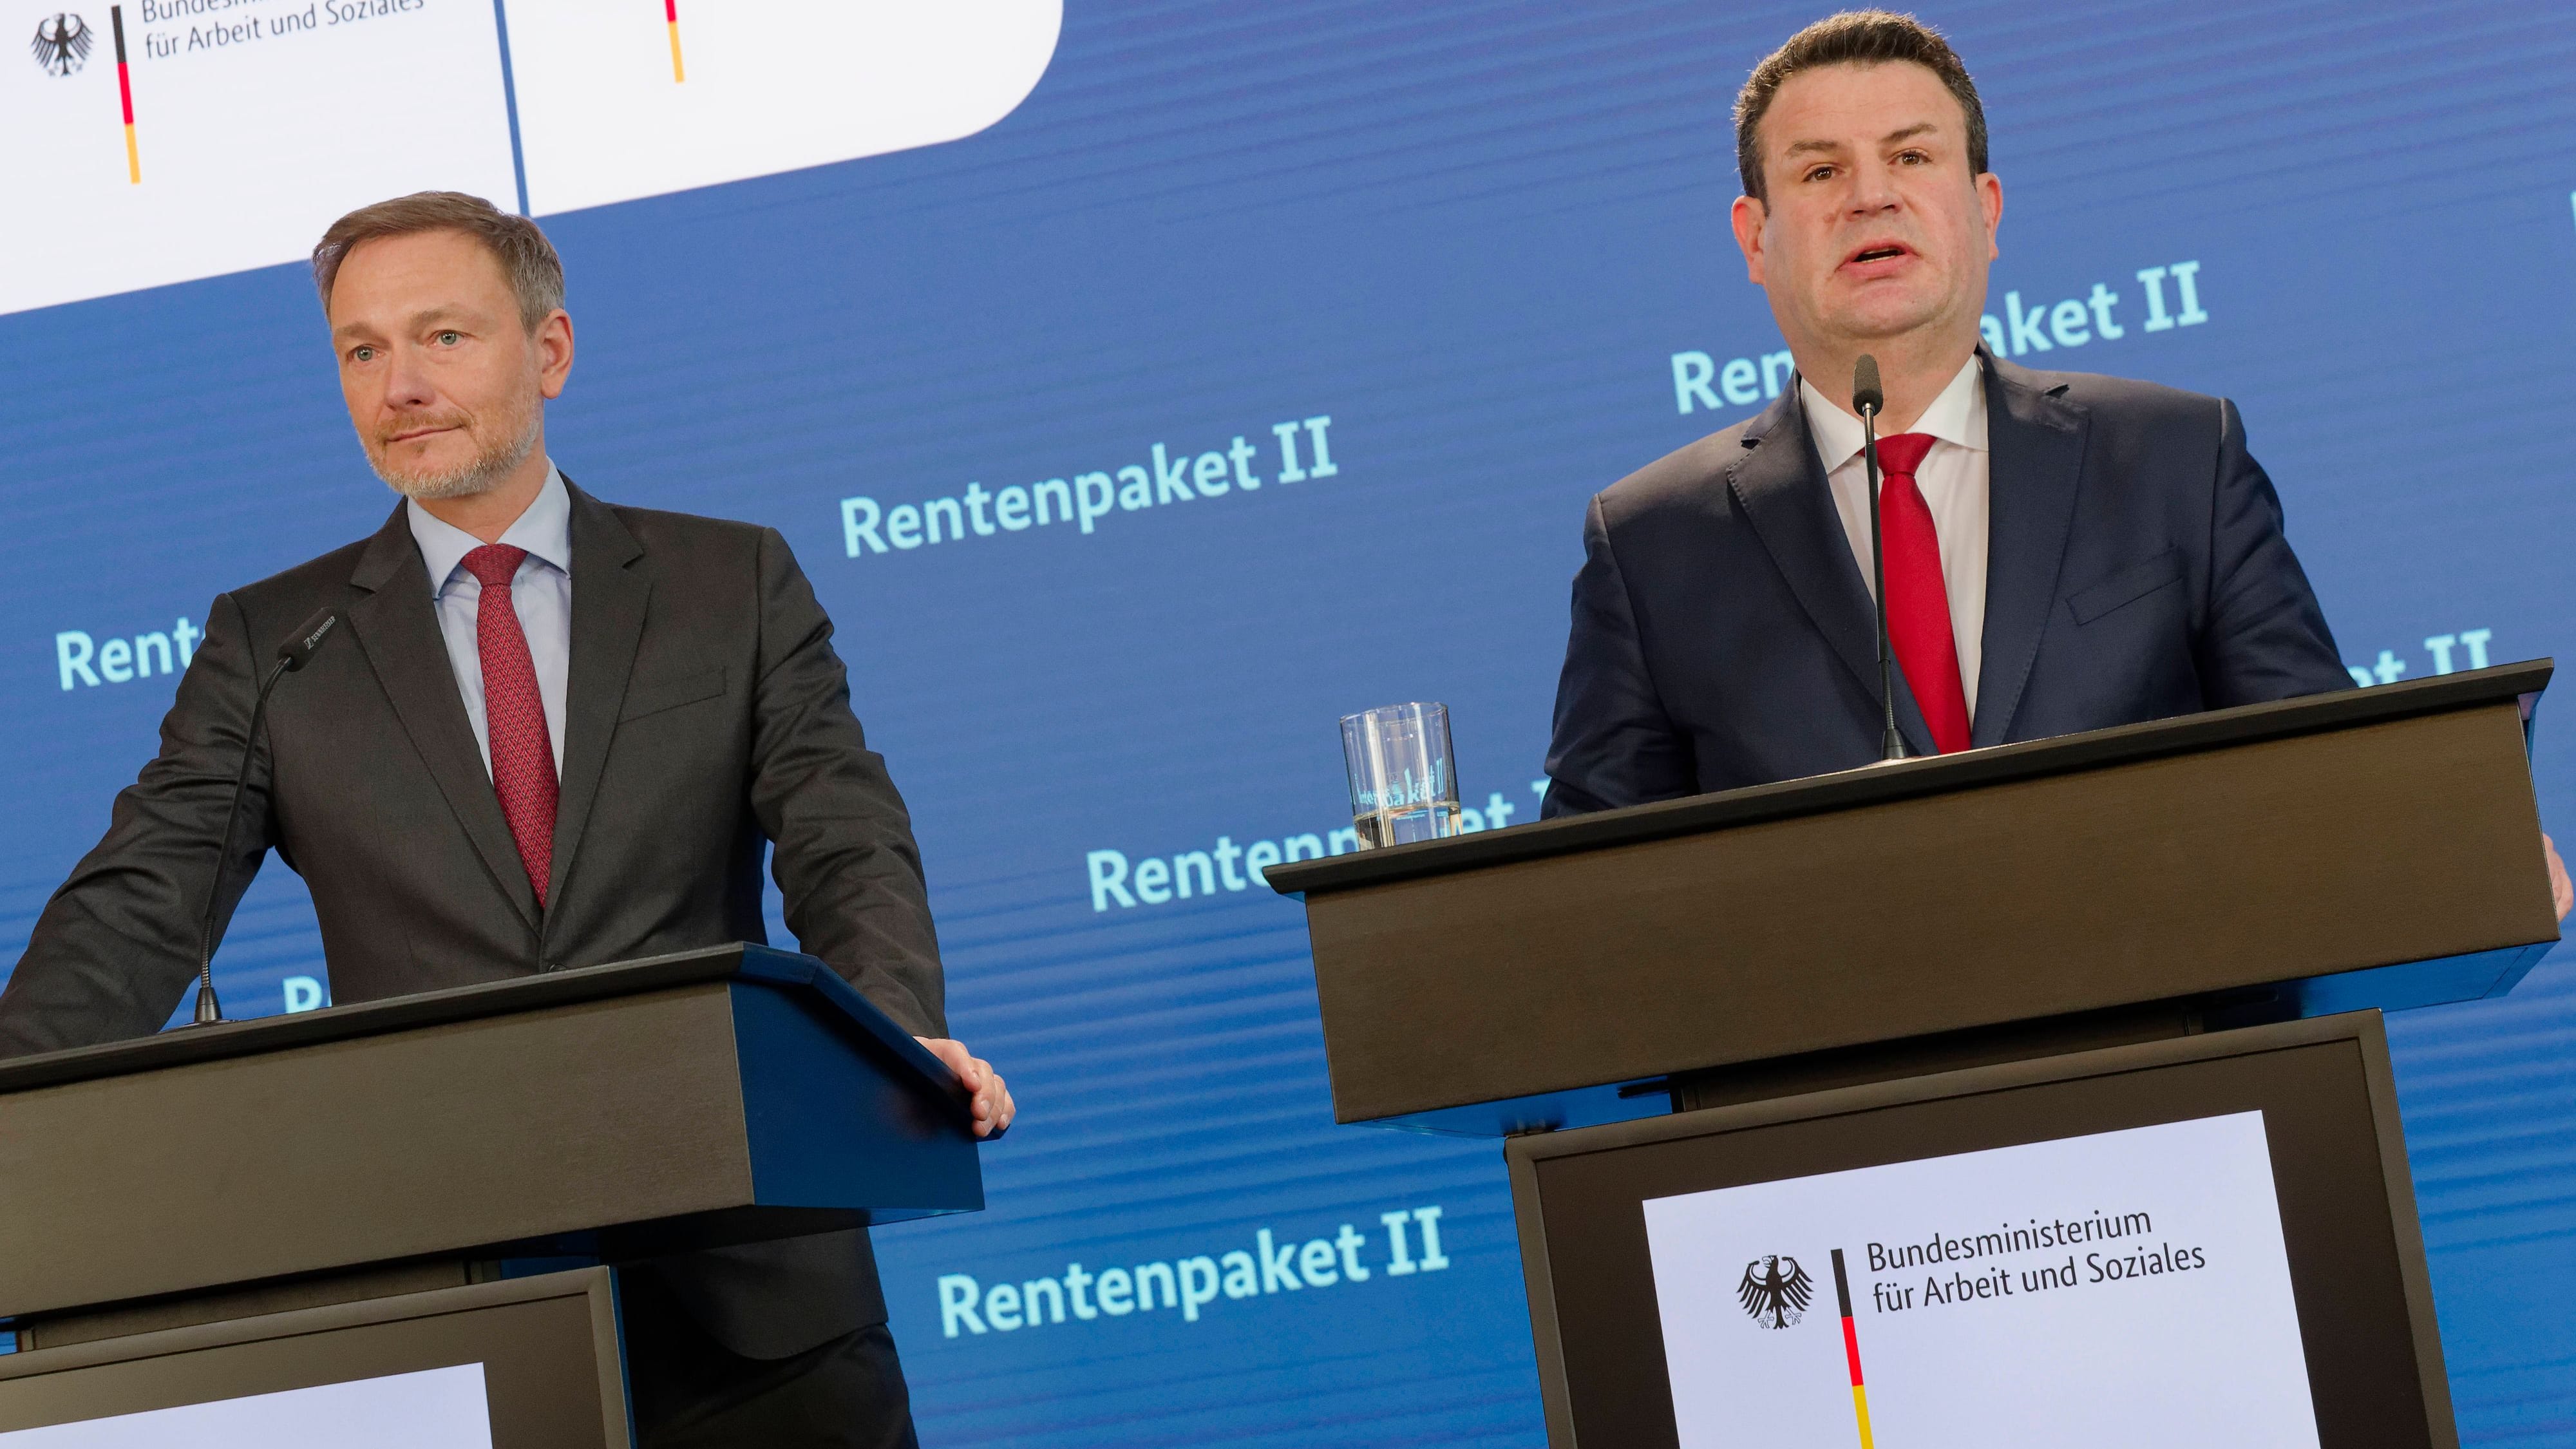 Rente mit 63: Rebellion auf FDP-Parteitag erwartet – Ärger für die Ampel?